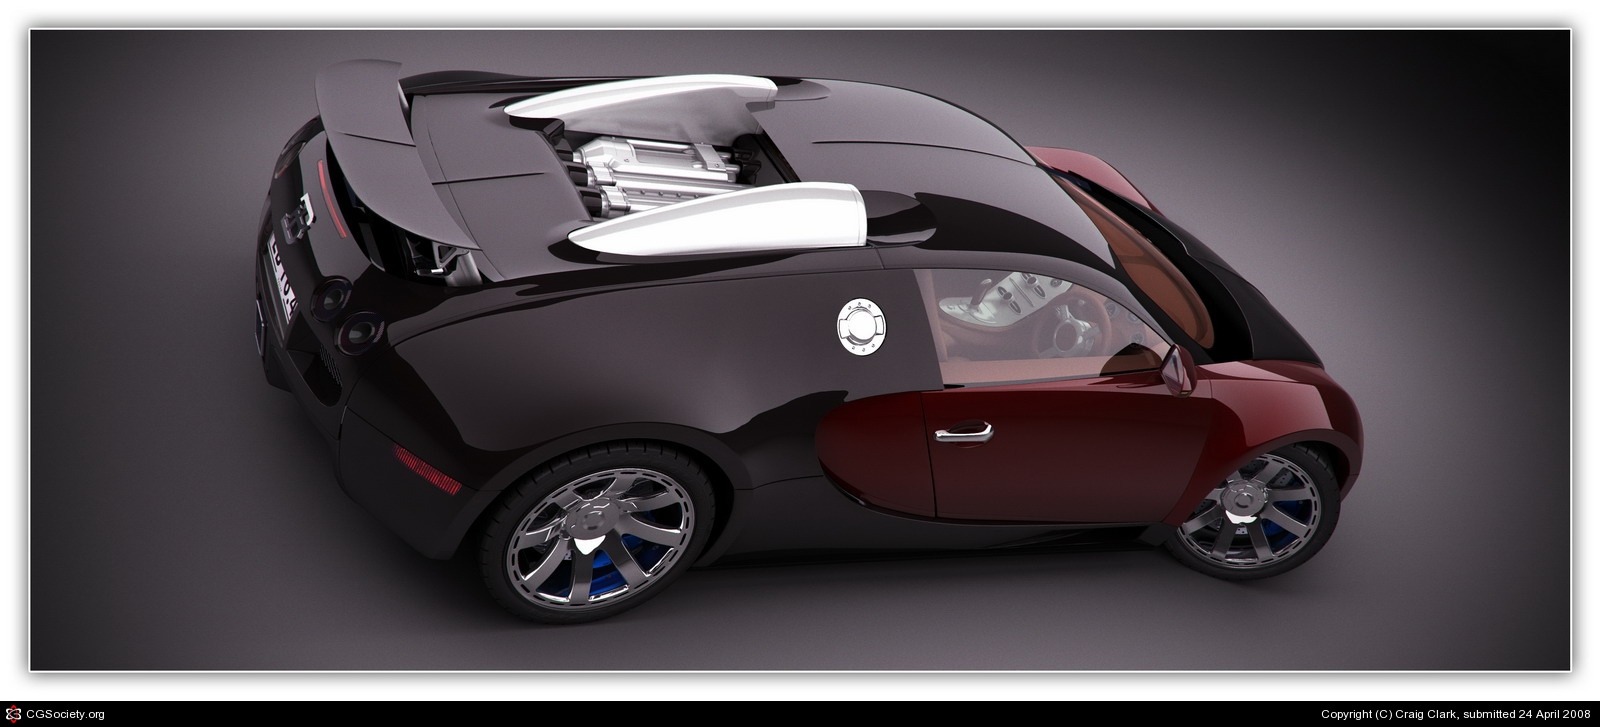 Bugatti Veyron EB16.4  by CAClark